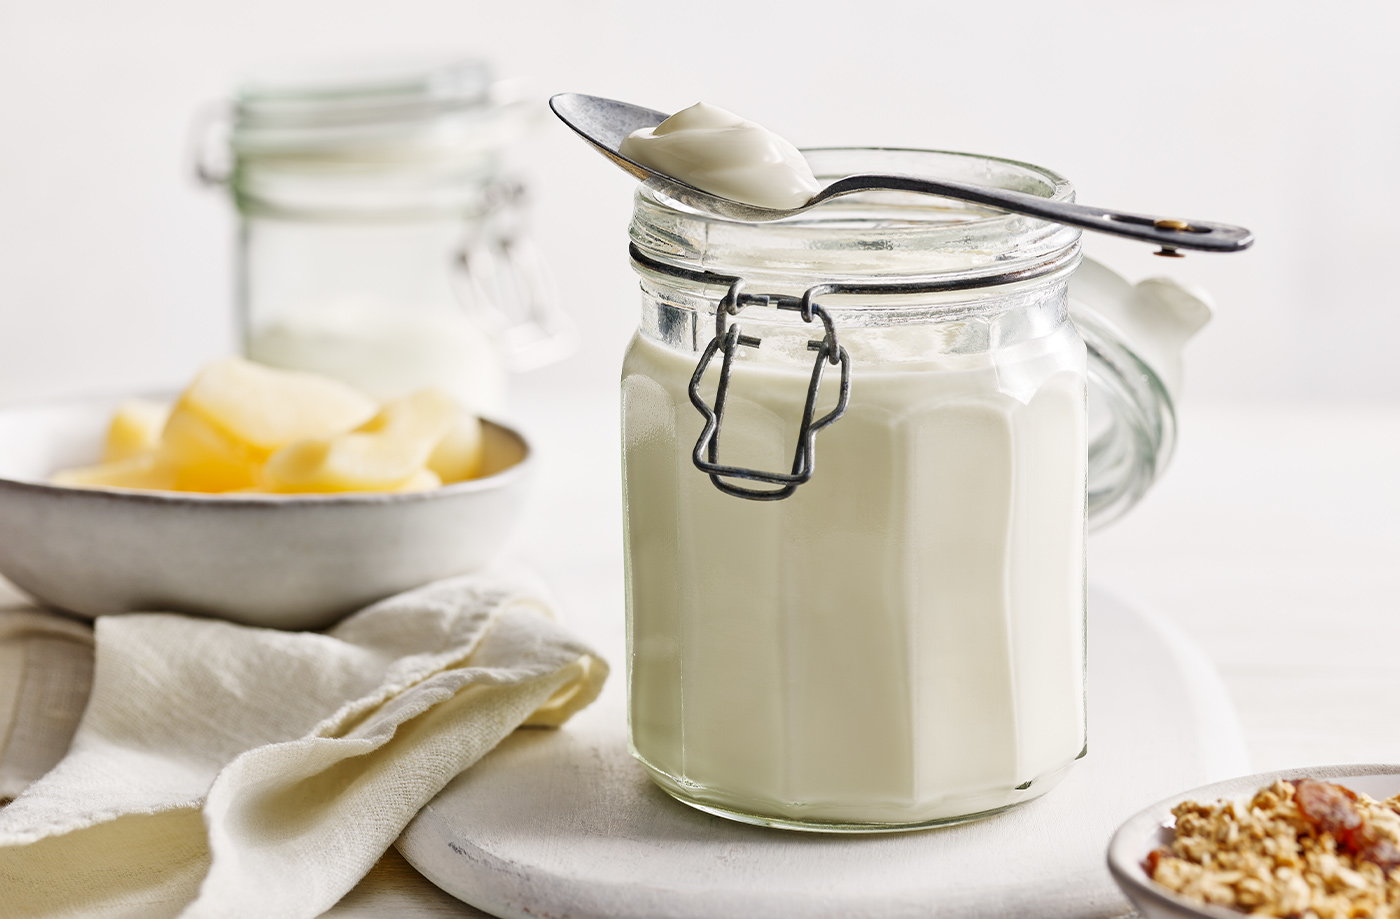 Türk sofra kültürünün önemli unsurlarından biri yoğurttur. Yoğurt lezzetinin yanı sıra sağlık için son derece faydalıdır.